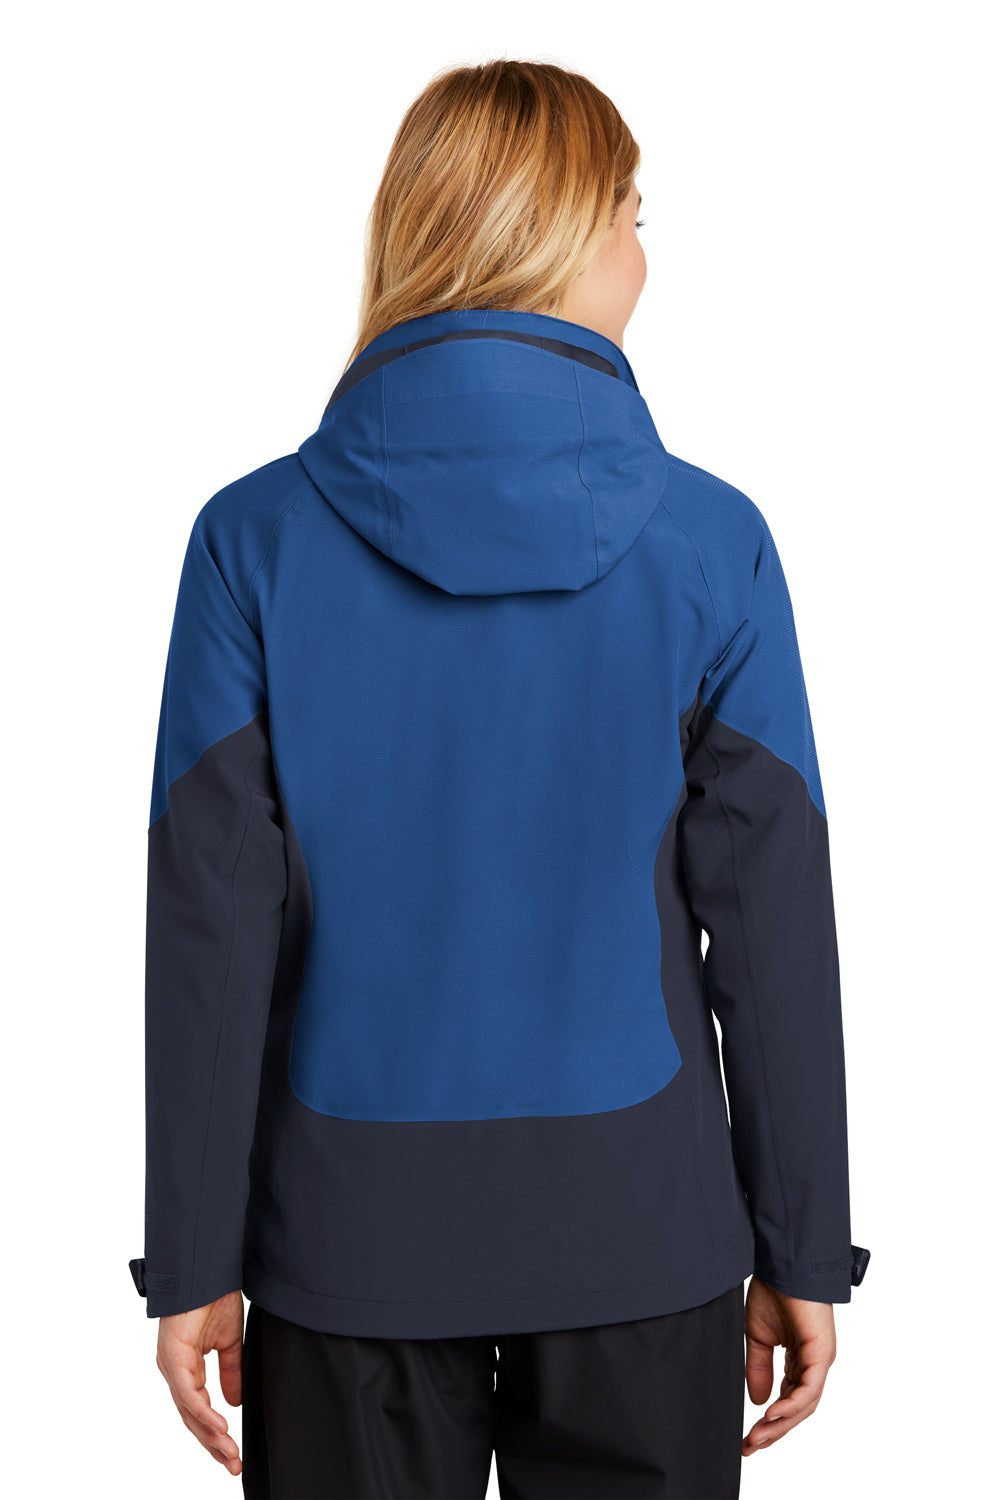 Eddie Bauer EB559 Womens WeatherEdge Waterproof Full Zip Hooded Jacket Cobalt Blue Model Back